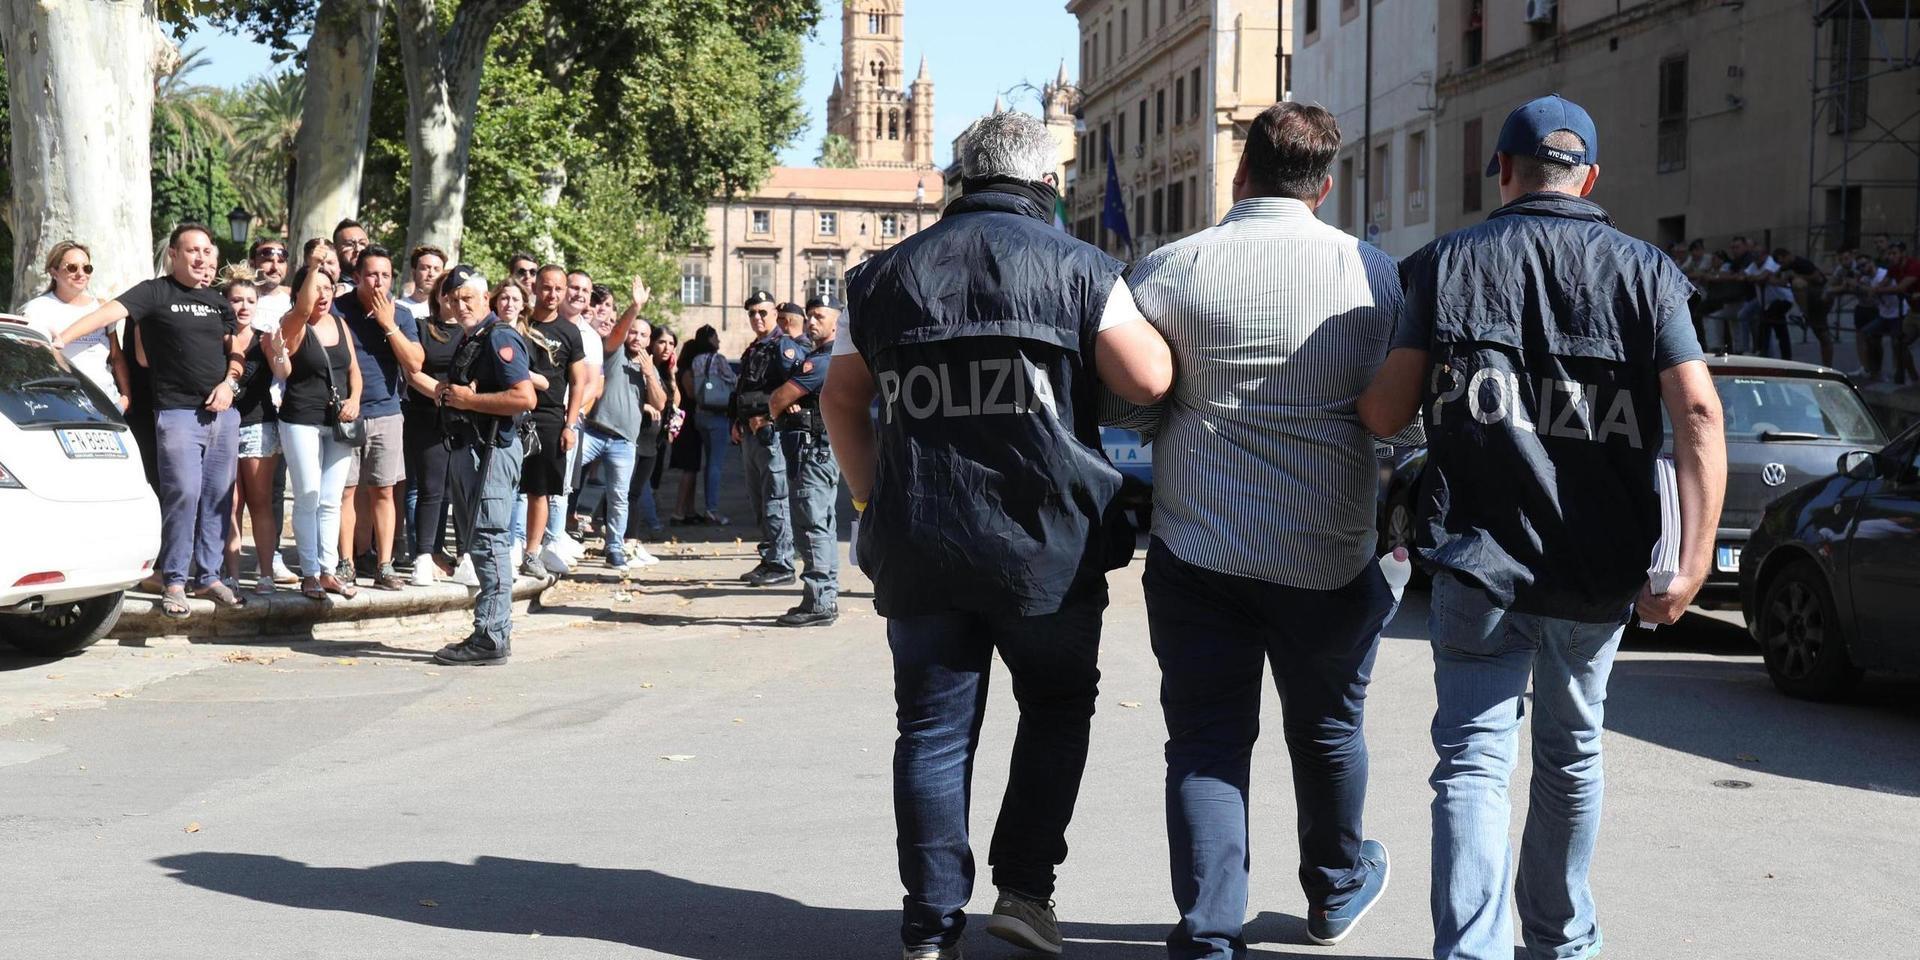 Una repressione contro i mafiosi a Palermo, nel sud Italia, nel 2019. Foto d'archivio.